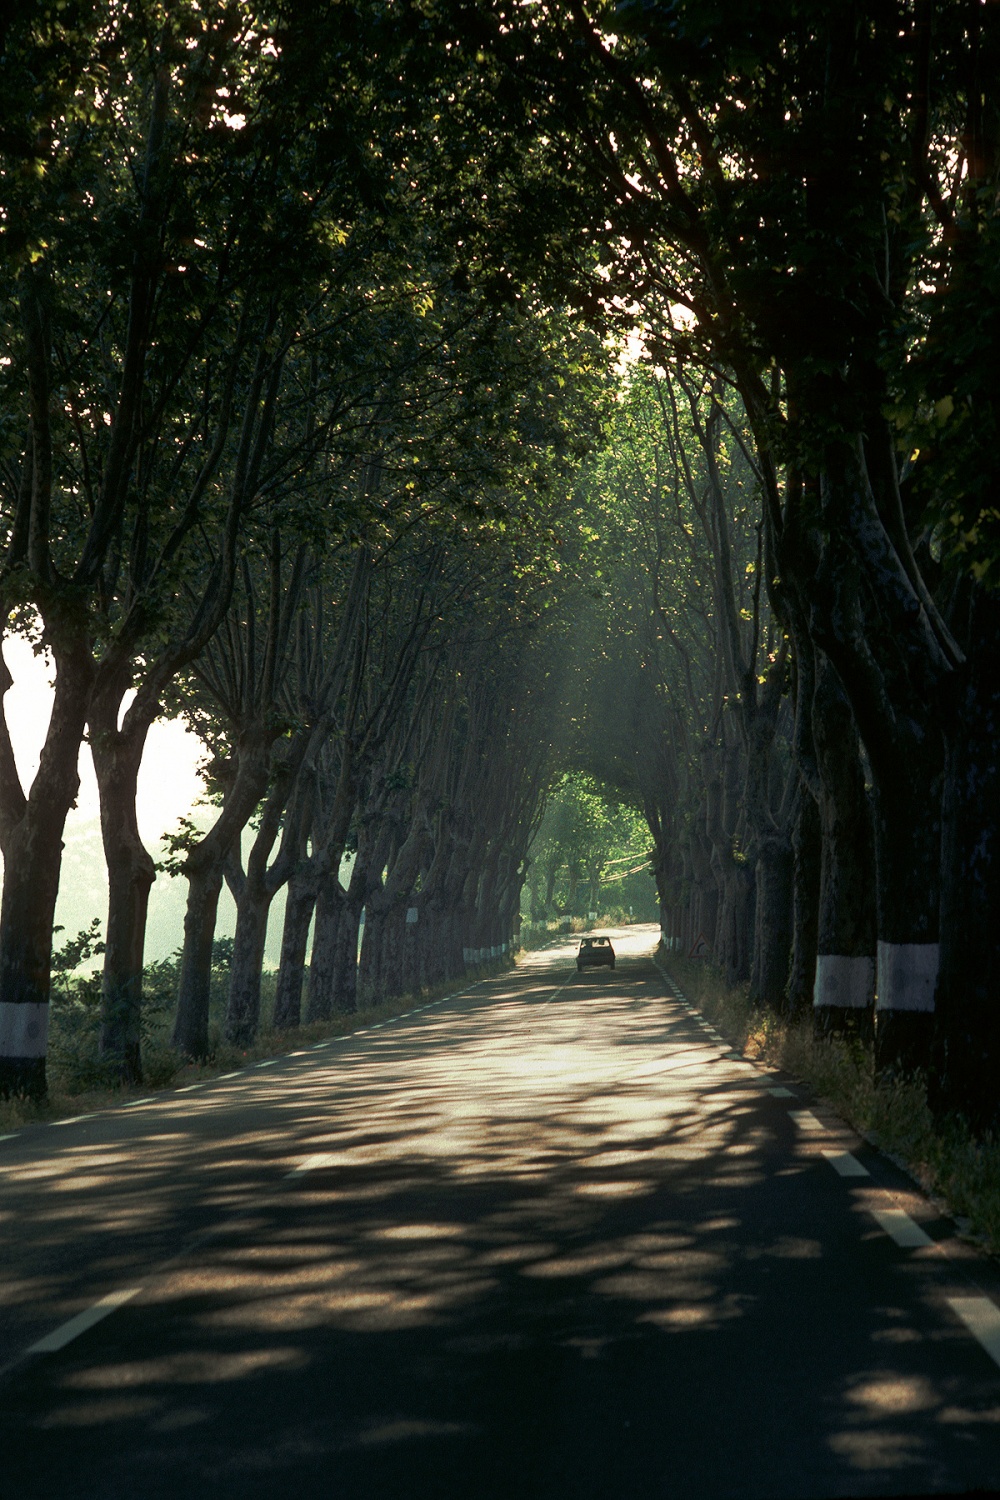 bill-hocker-roadway-provence-france-1990